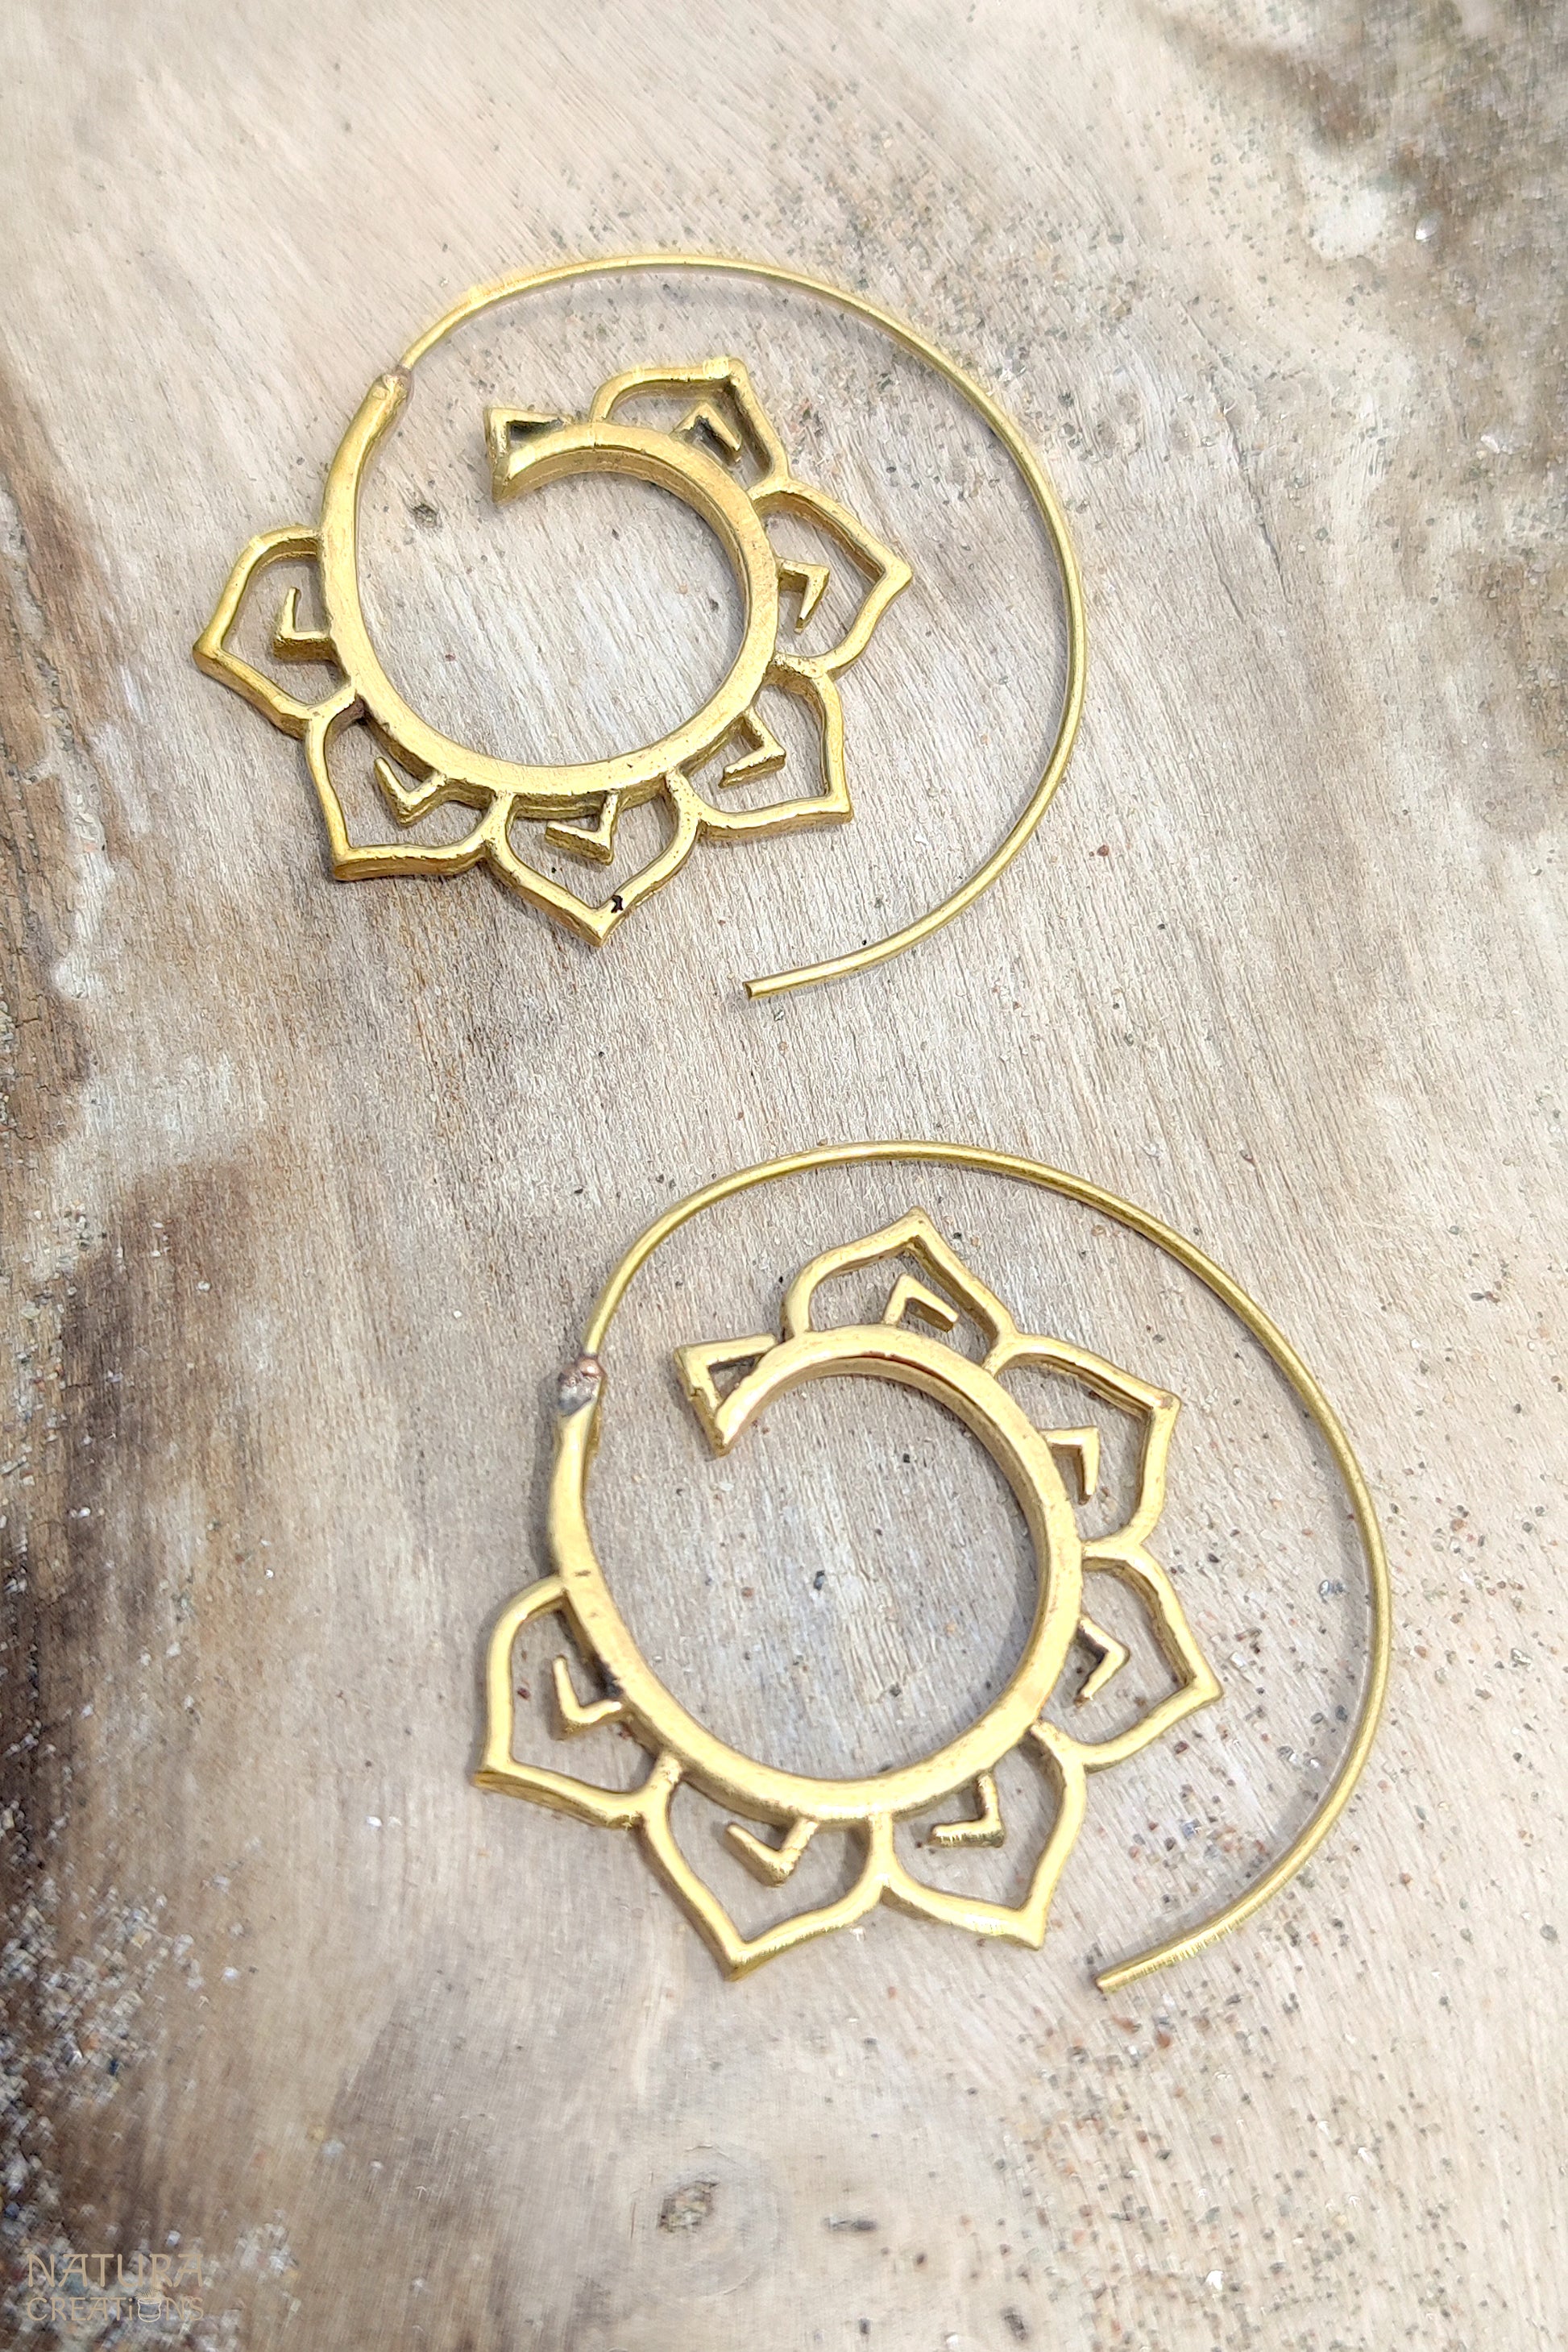 Spiral Flower Earrings ⪼ Handmade Brass Earrings